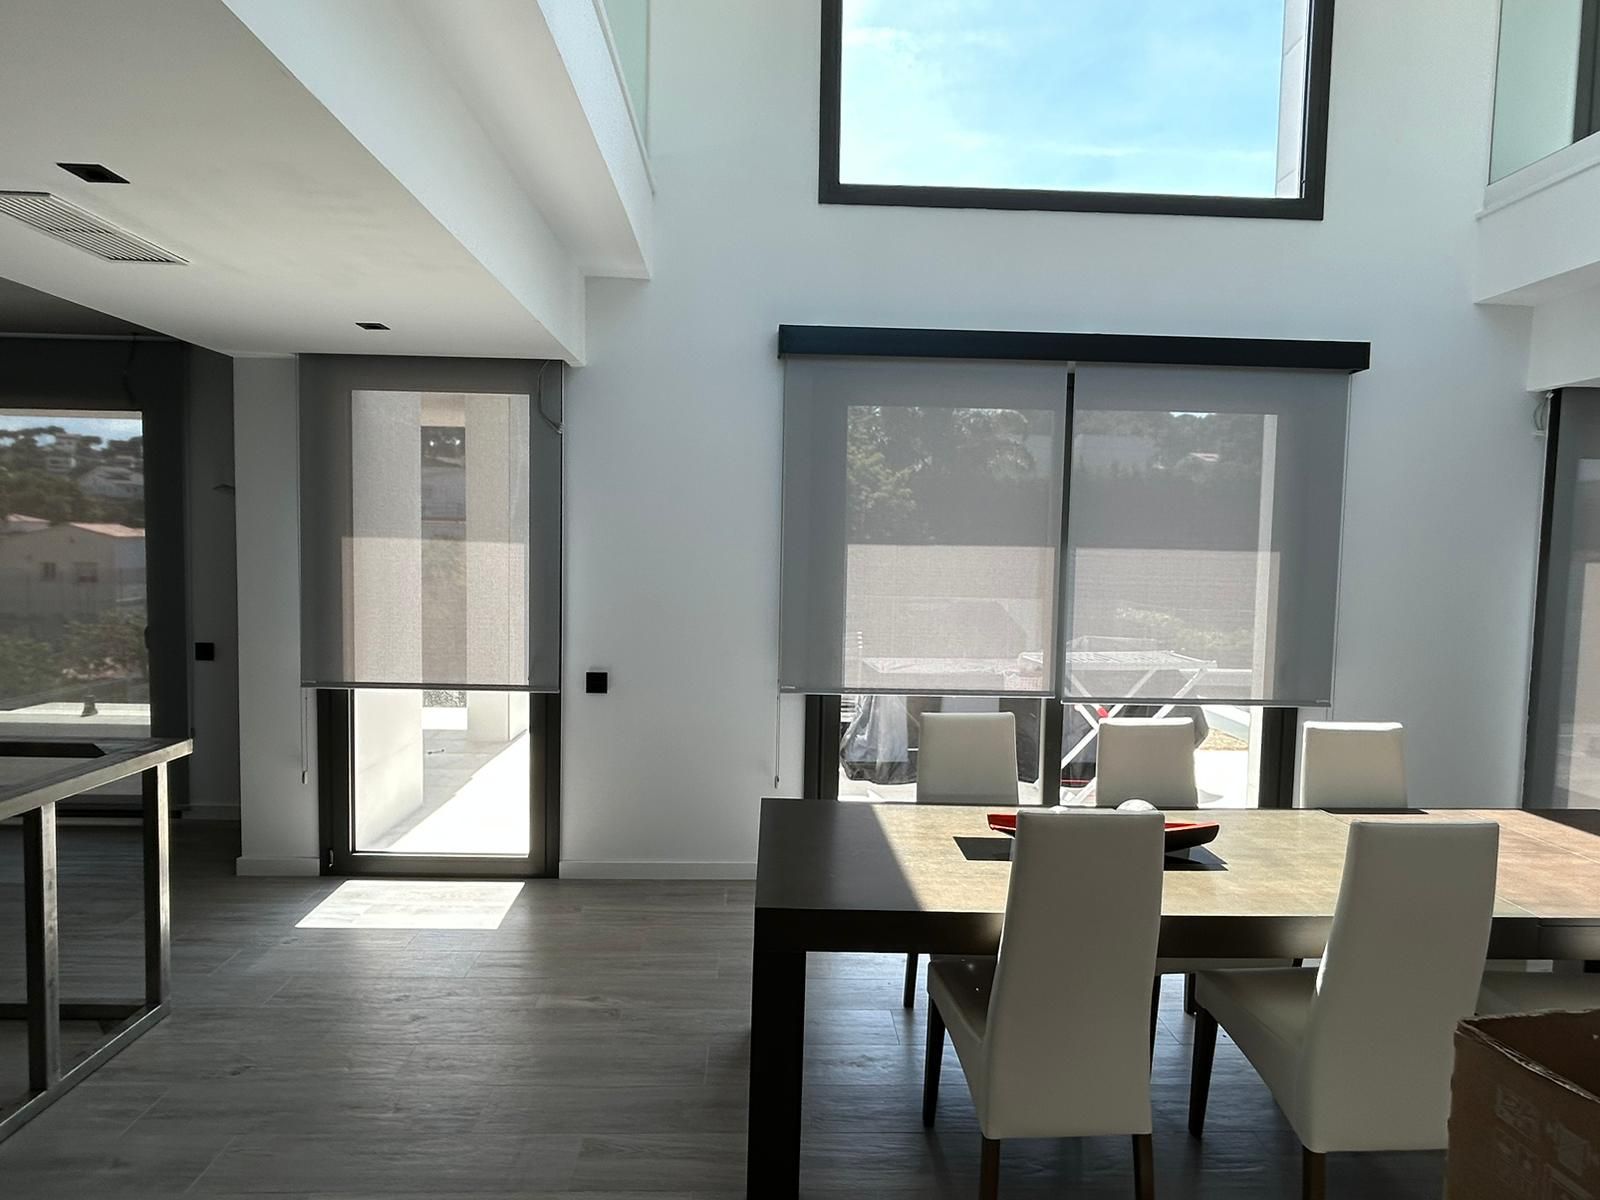 Instalación de cortinas enrollables con tejido técnico screen, referencia Natté 380P abertura del 5% color Pearl/Grey, instaladas en vivienda de Castelldefels